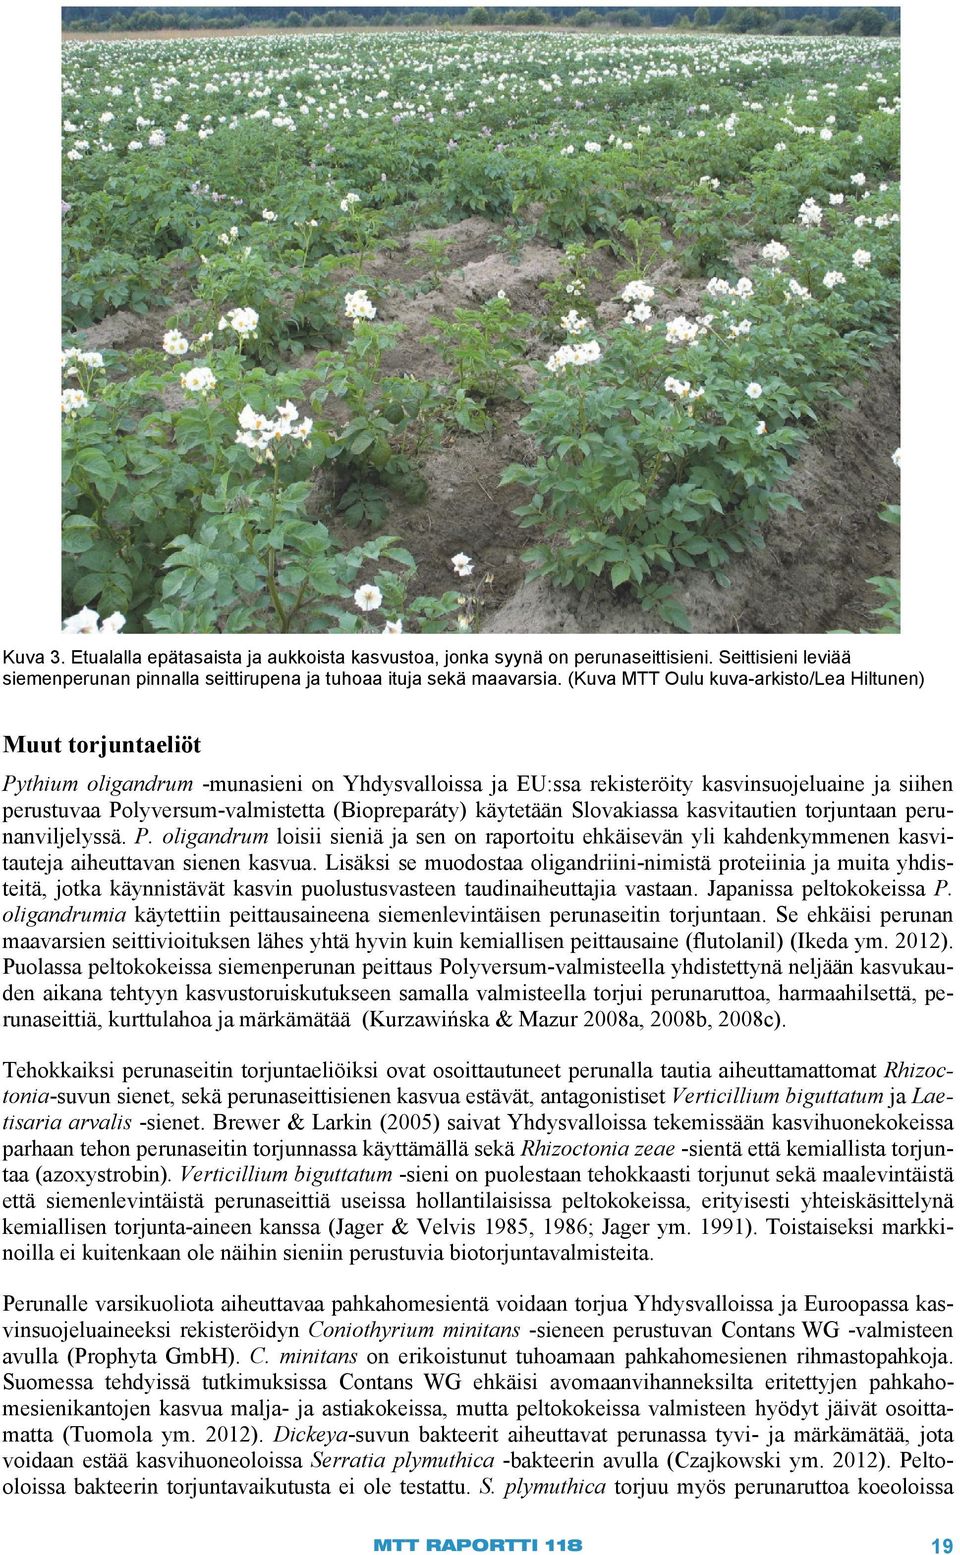 (Biopreparáty) käytetään Slovakiassa kasvitautien torjuntaan perunanviljelyssä. P. oligandrum loisii sieniä ja sen on raportoitu ehkäisevän yli kahdenkymmenen kasvitauteja aiheuttavan sienen kasvua.